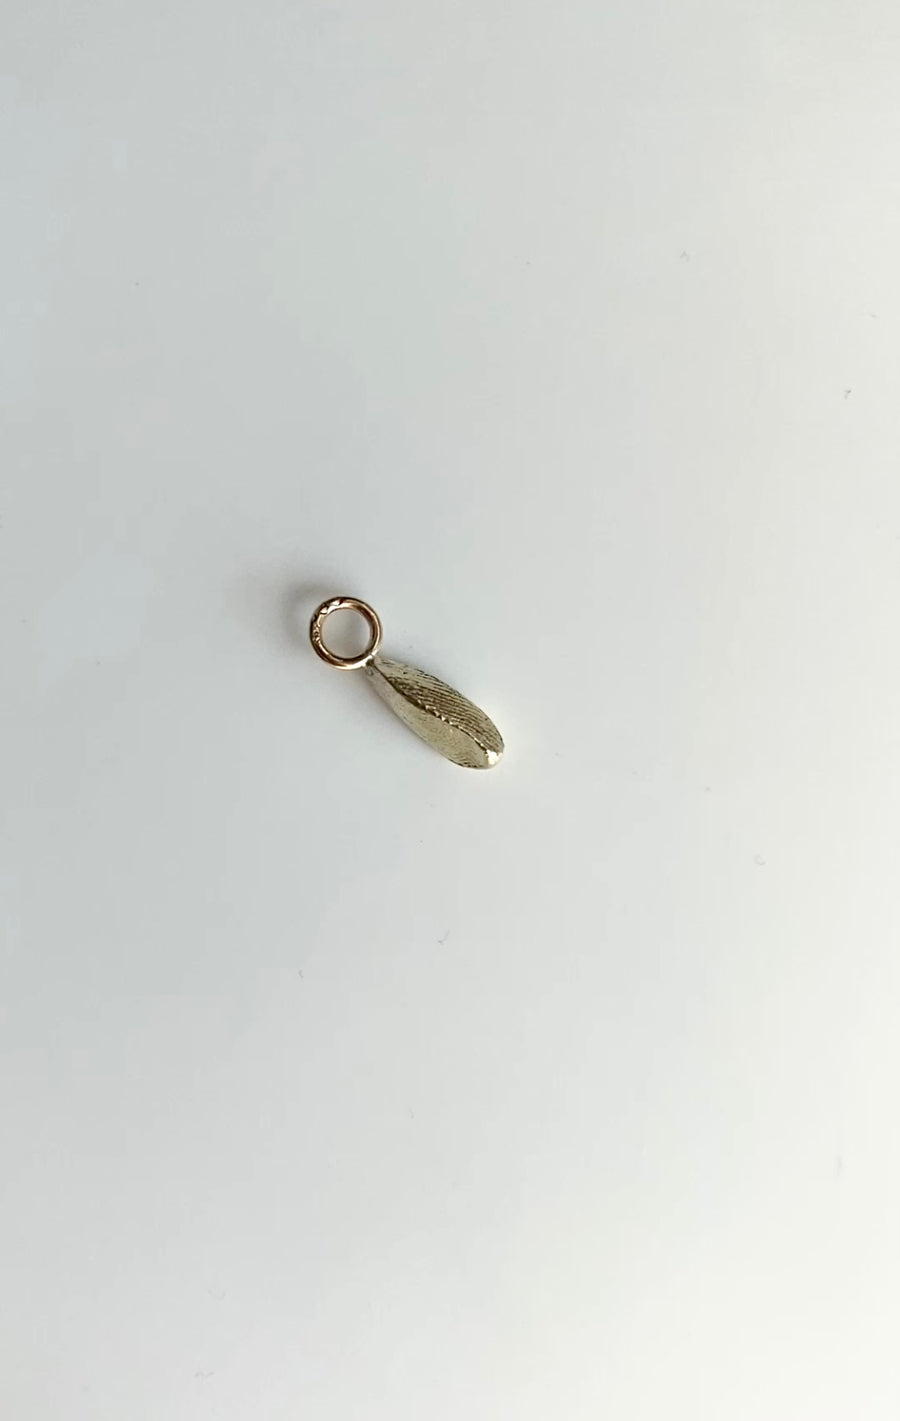 Small fingerprint pendant